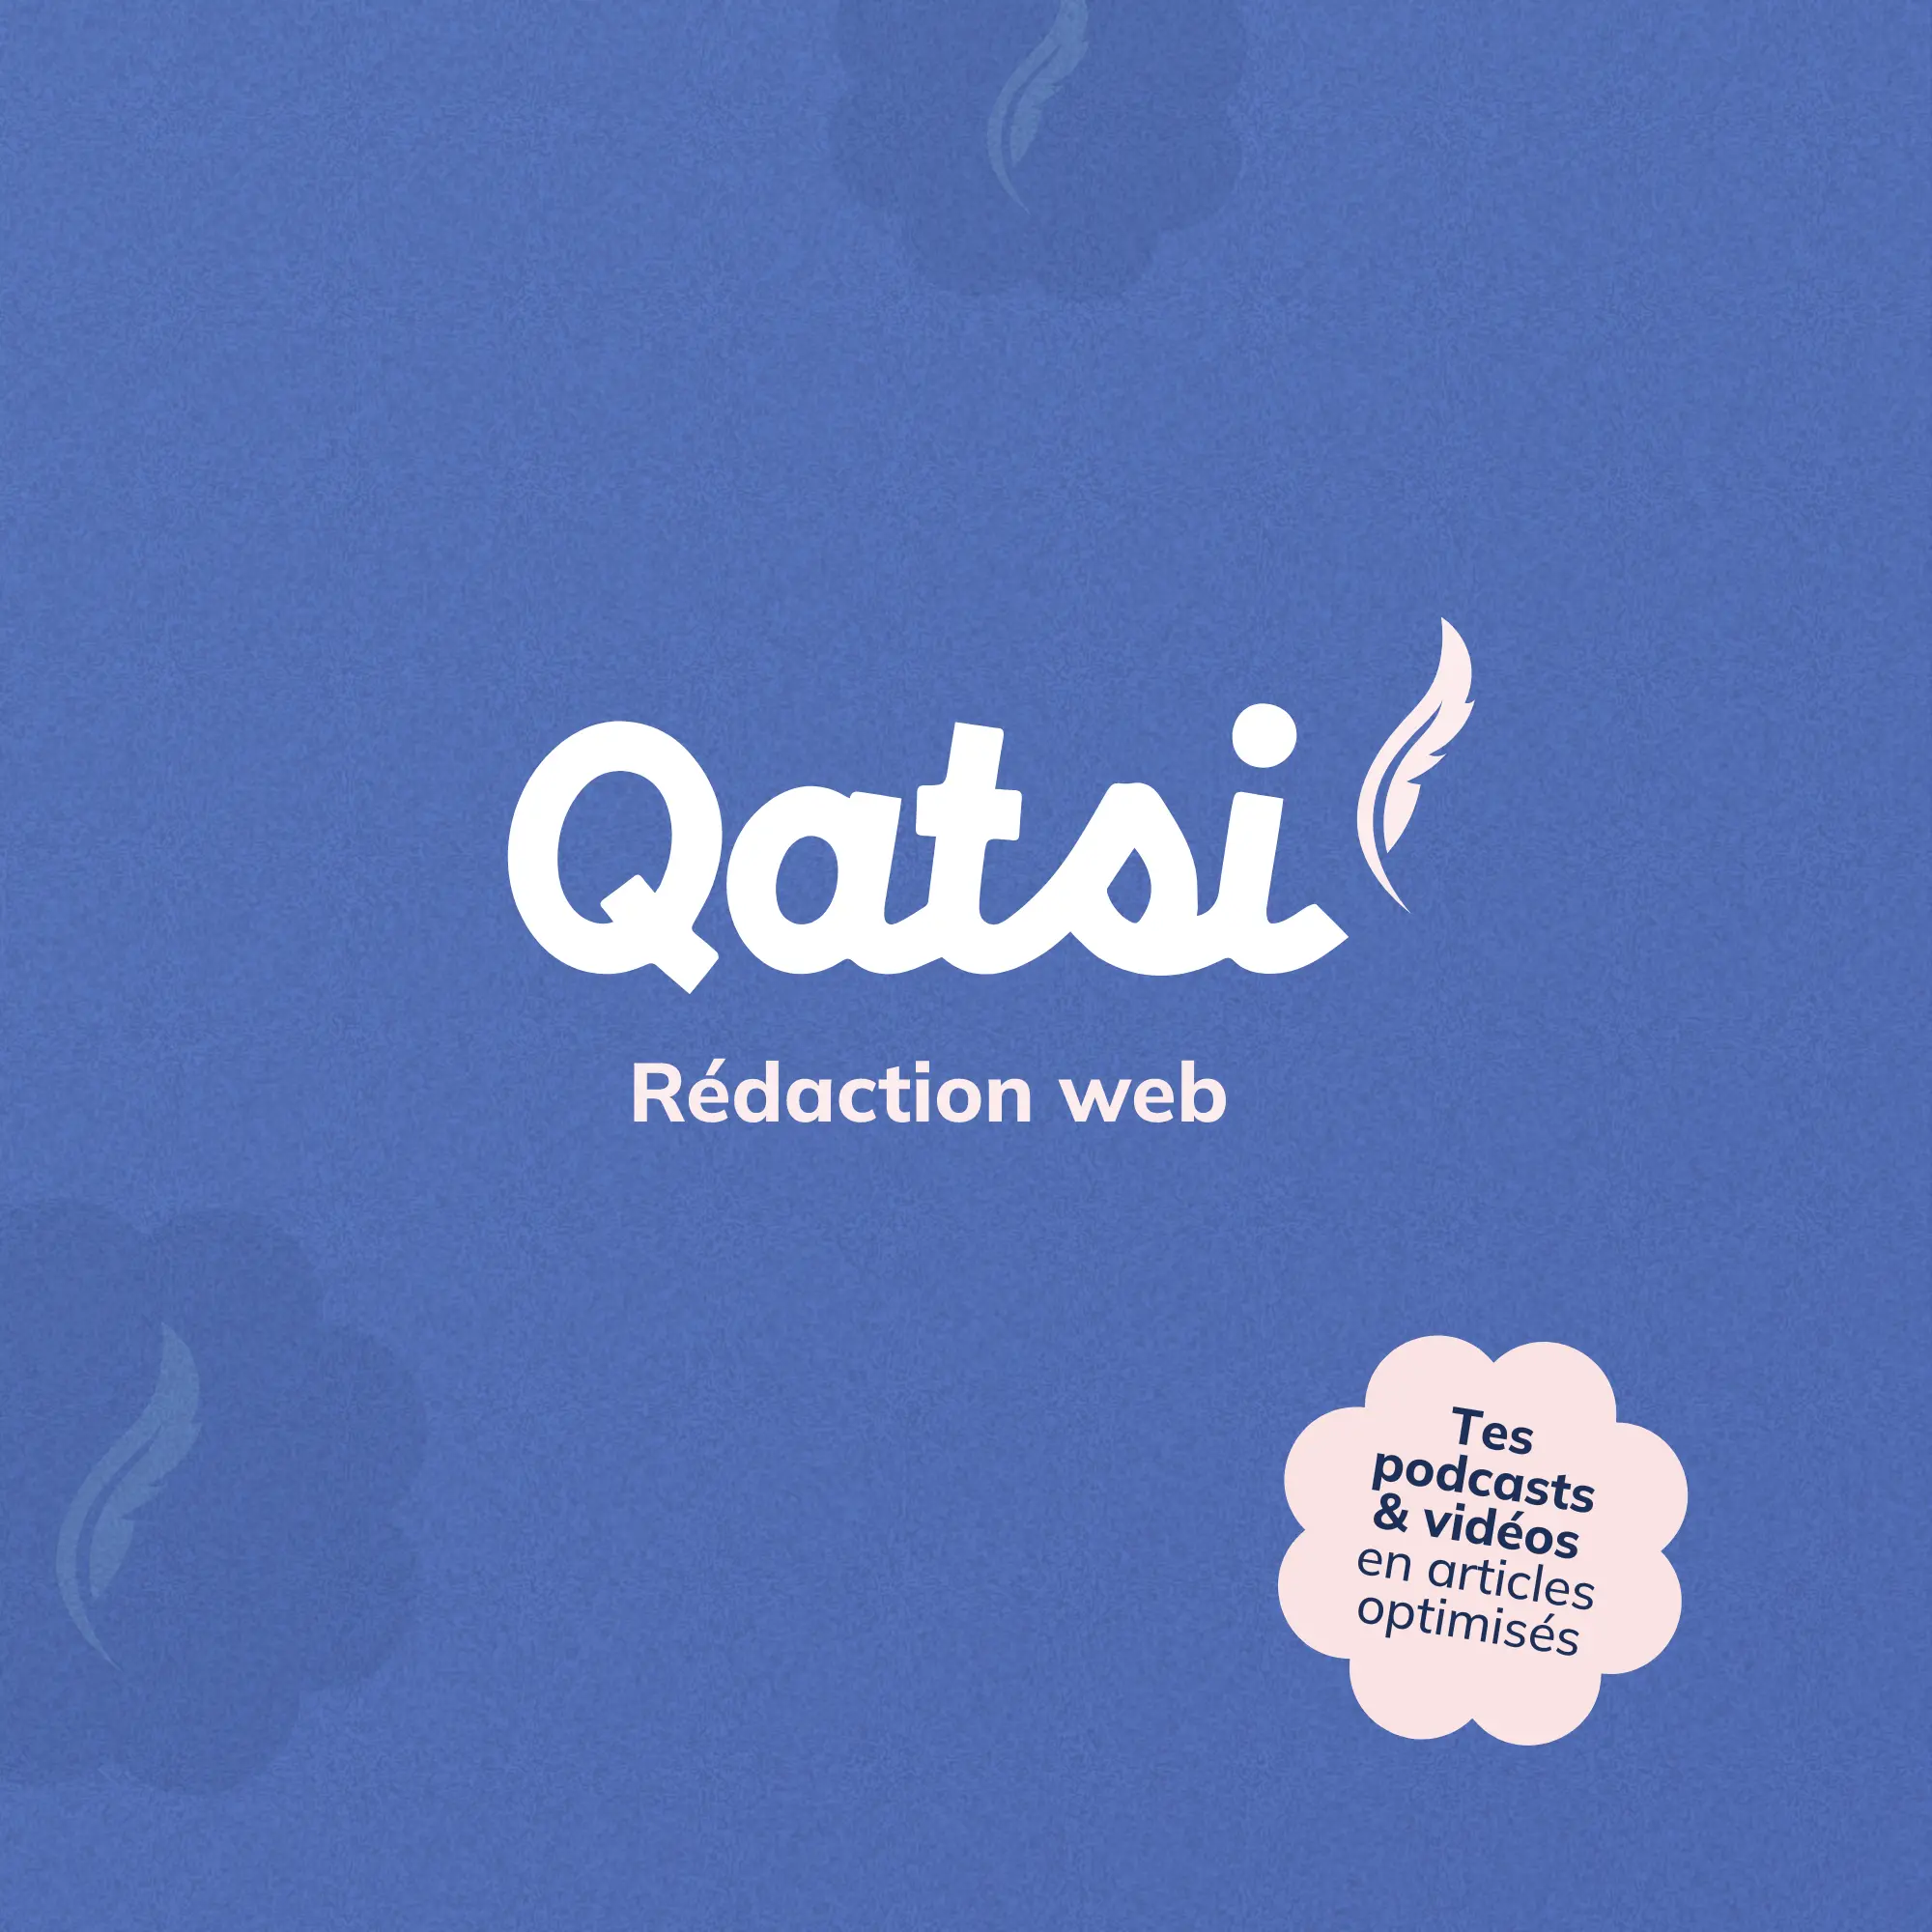 Création logo plume pour le branding de Qatsi rédaction web lors de la création de son identité visuelle et de son identité de marque - Branding par Julie Goudier, Designer de marque à Nantes